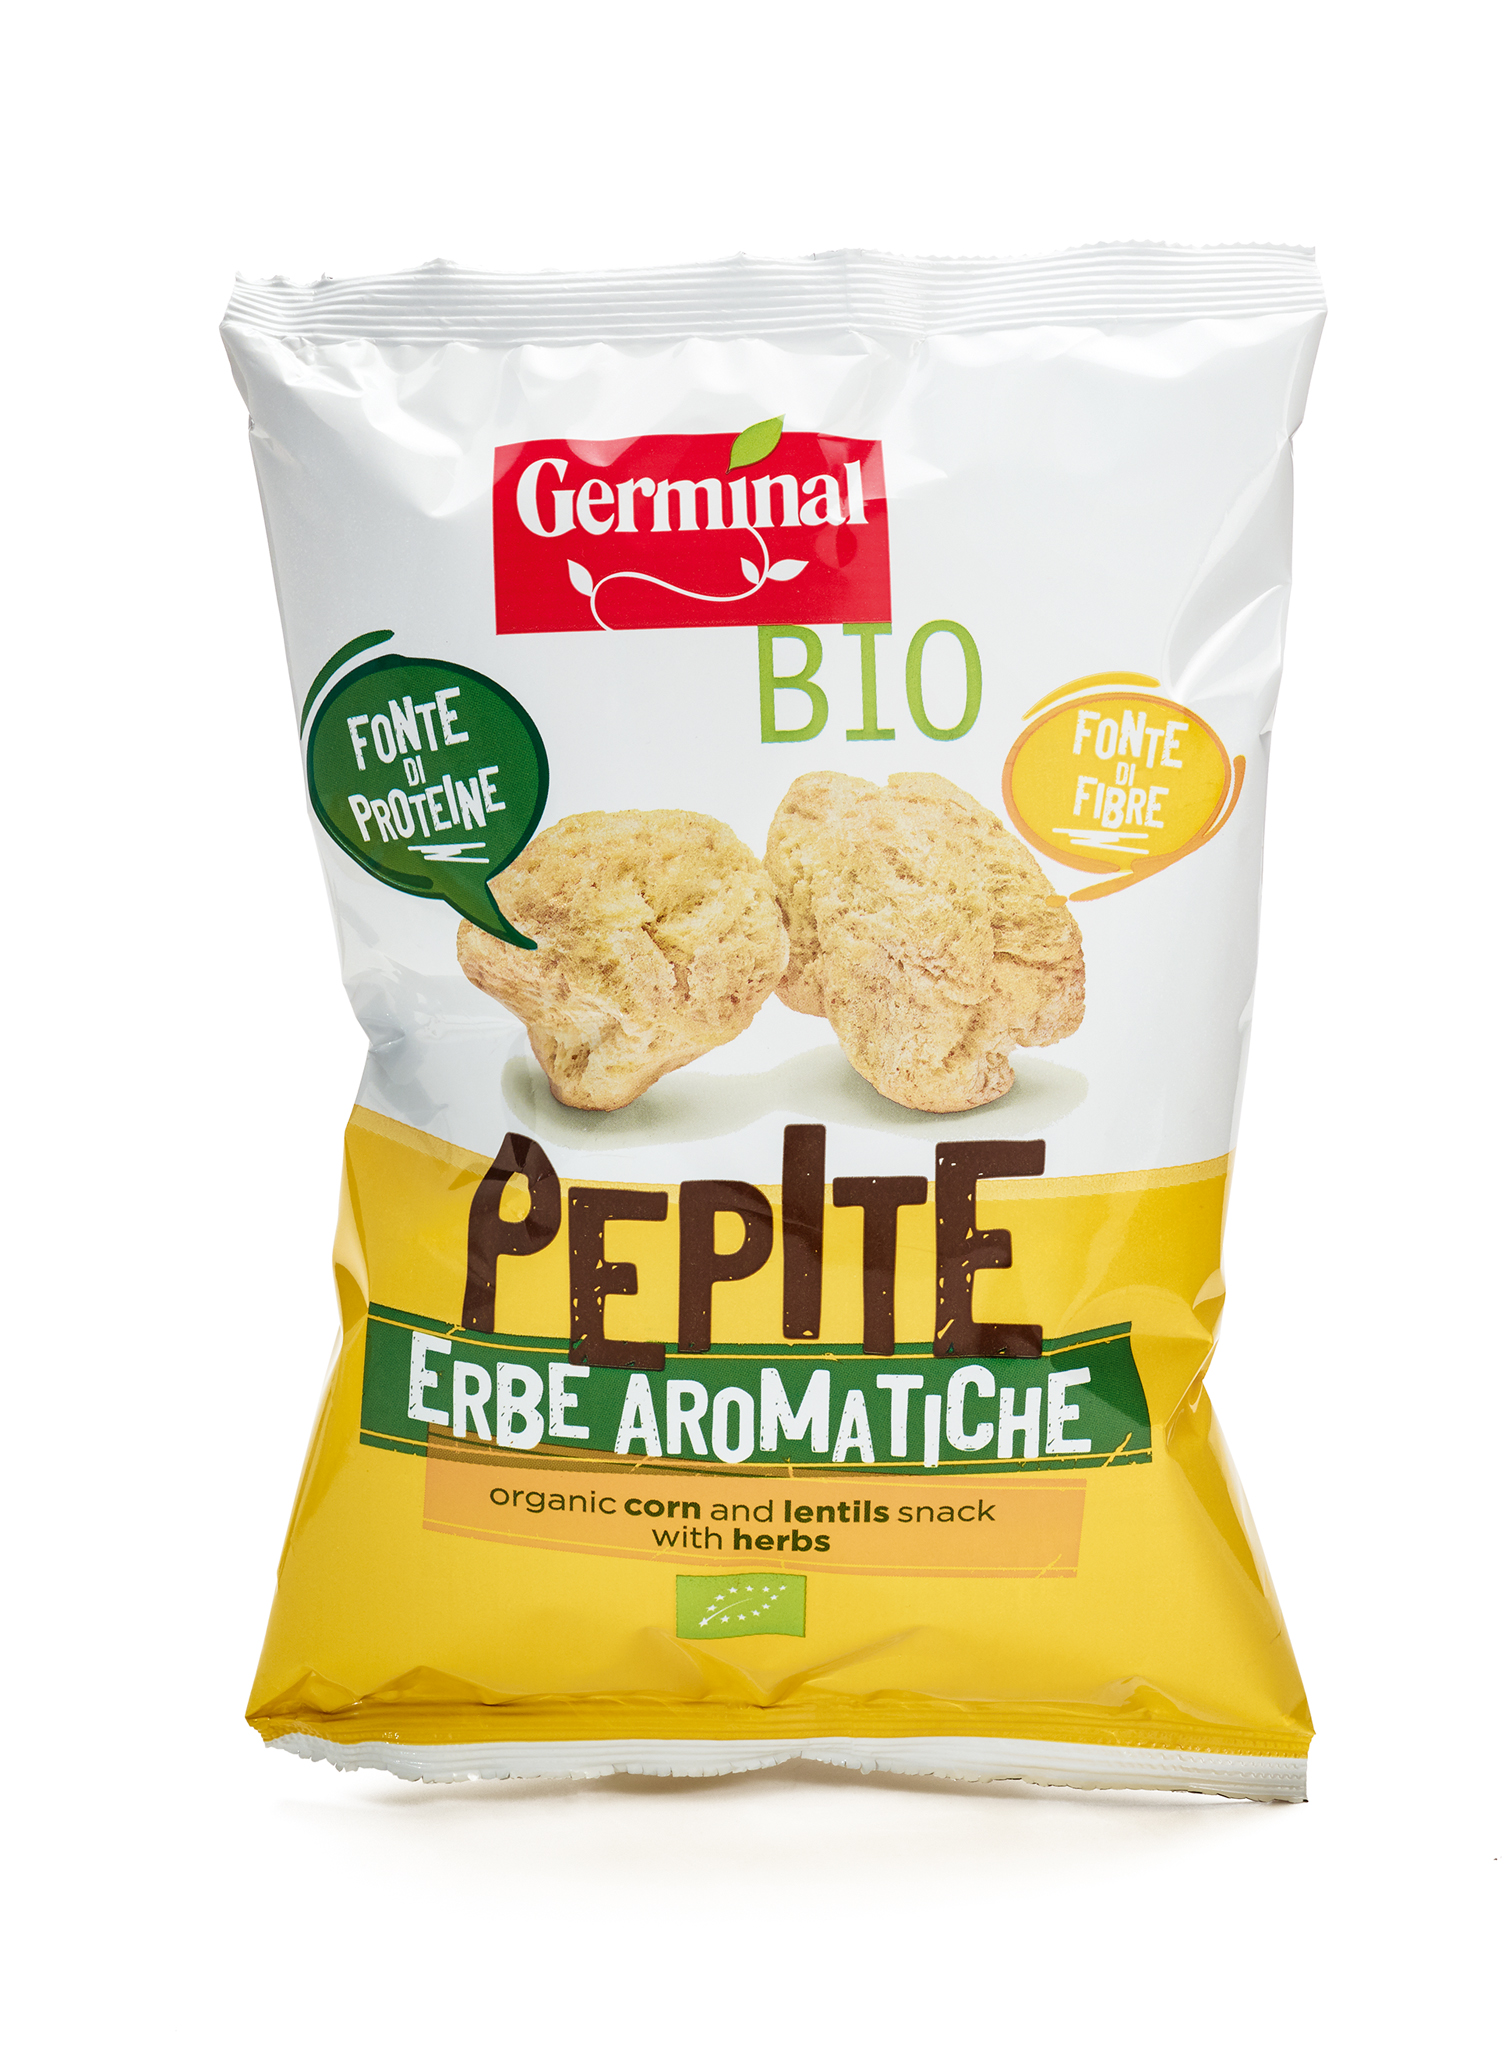 Immagine confezione Pepite Erbe Aromatiche Germinal Bio